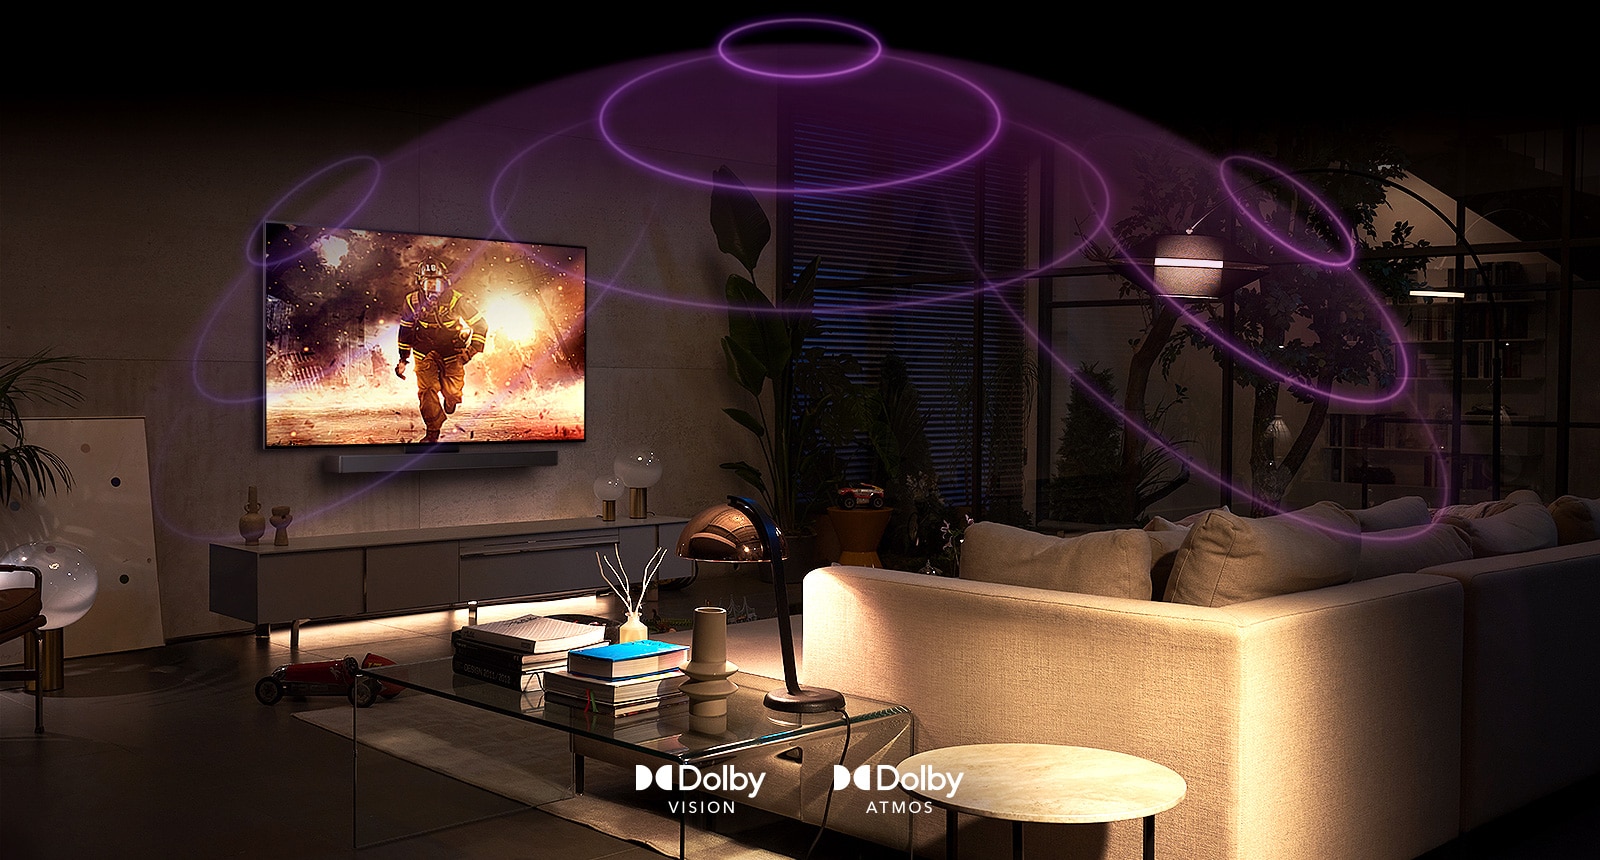 Slika televizorja LG OLED v sobi, na njem se predvaja akcijski film.  Zvočni valovi ustvarijo kupolo med kavčem in televizorjem in tako ustvarijo vseobsegajoč prostorski zvok.